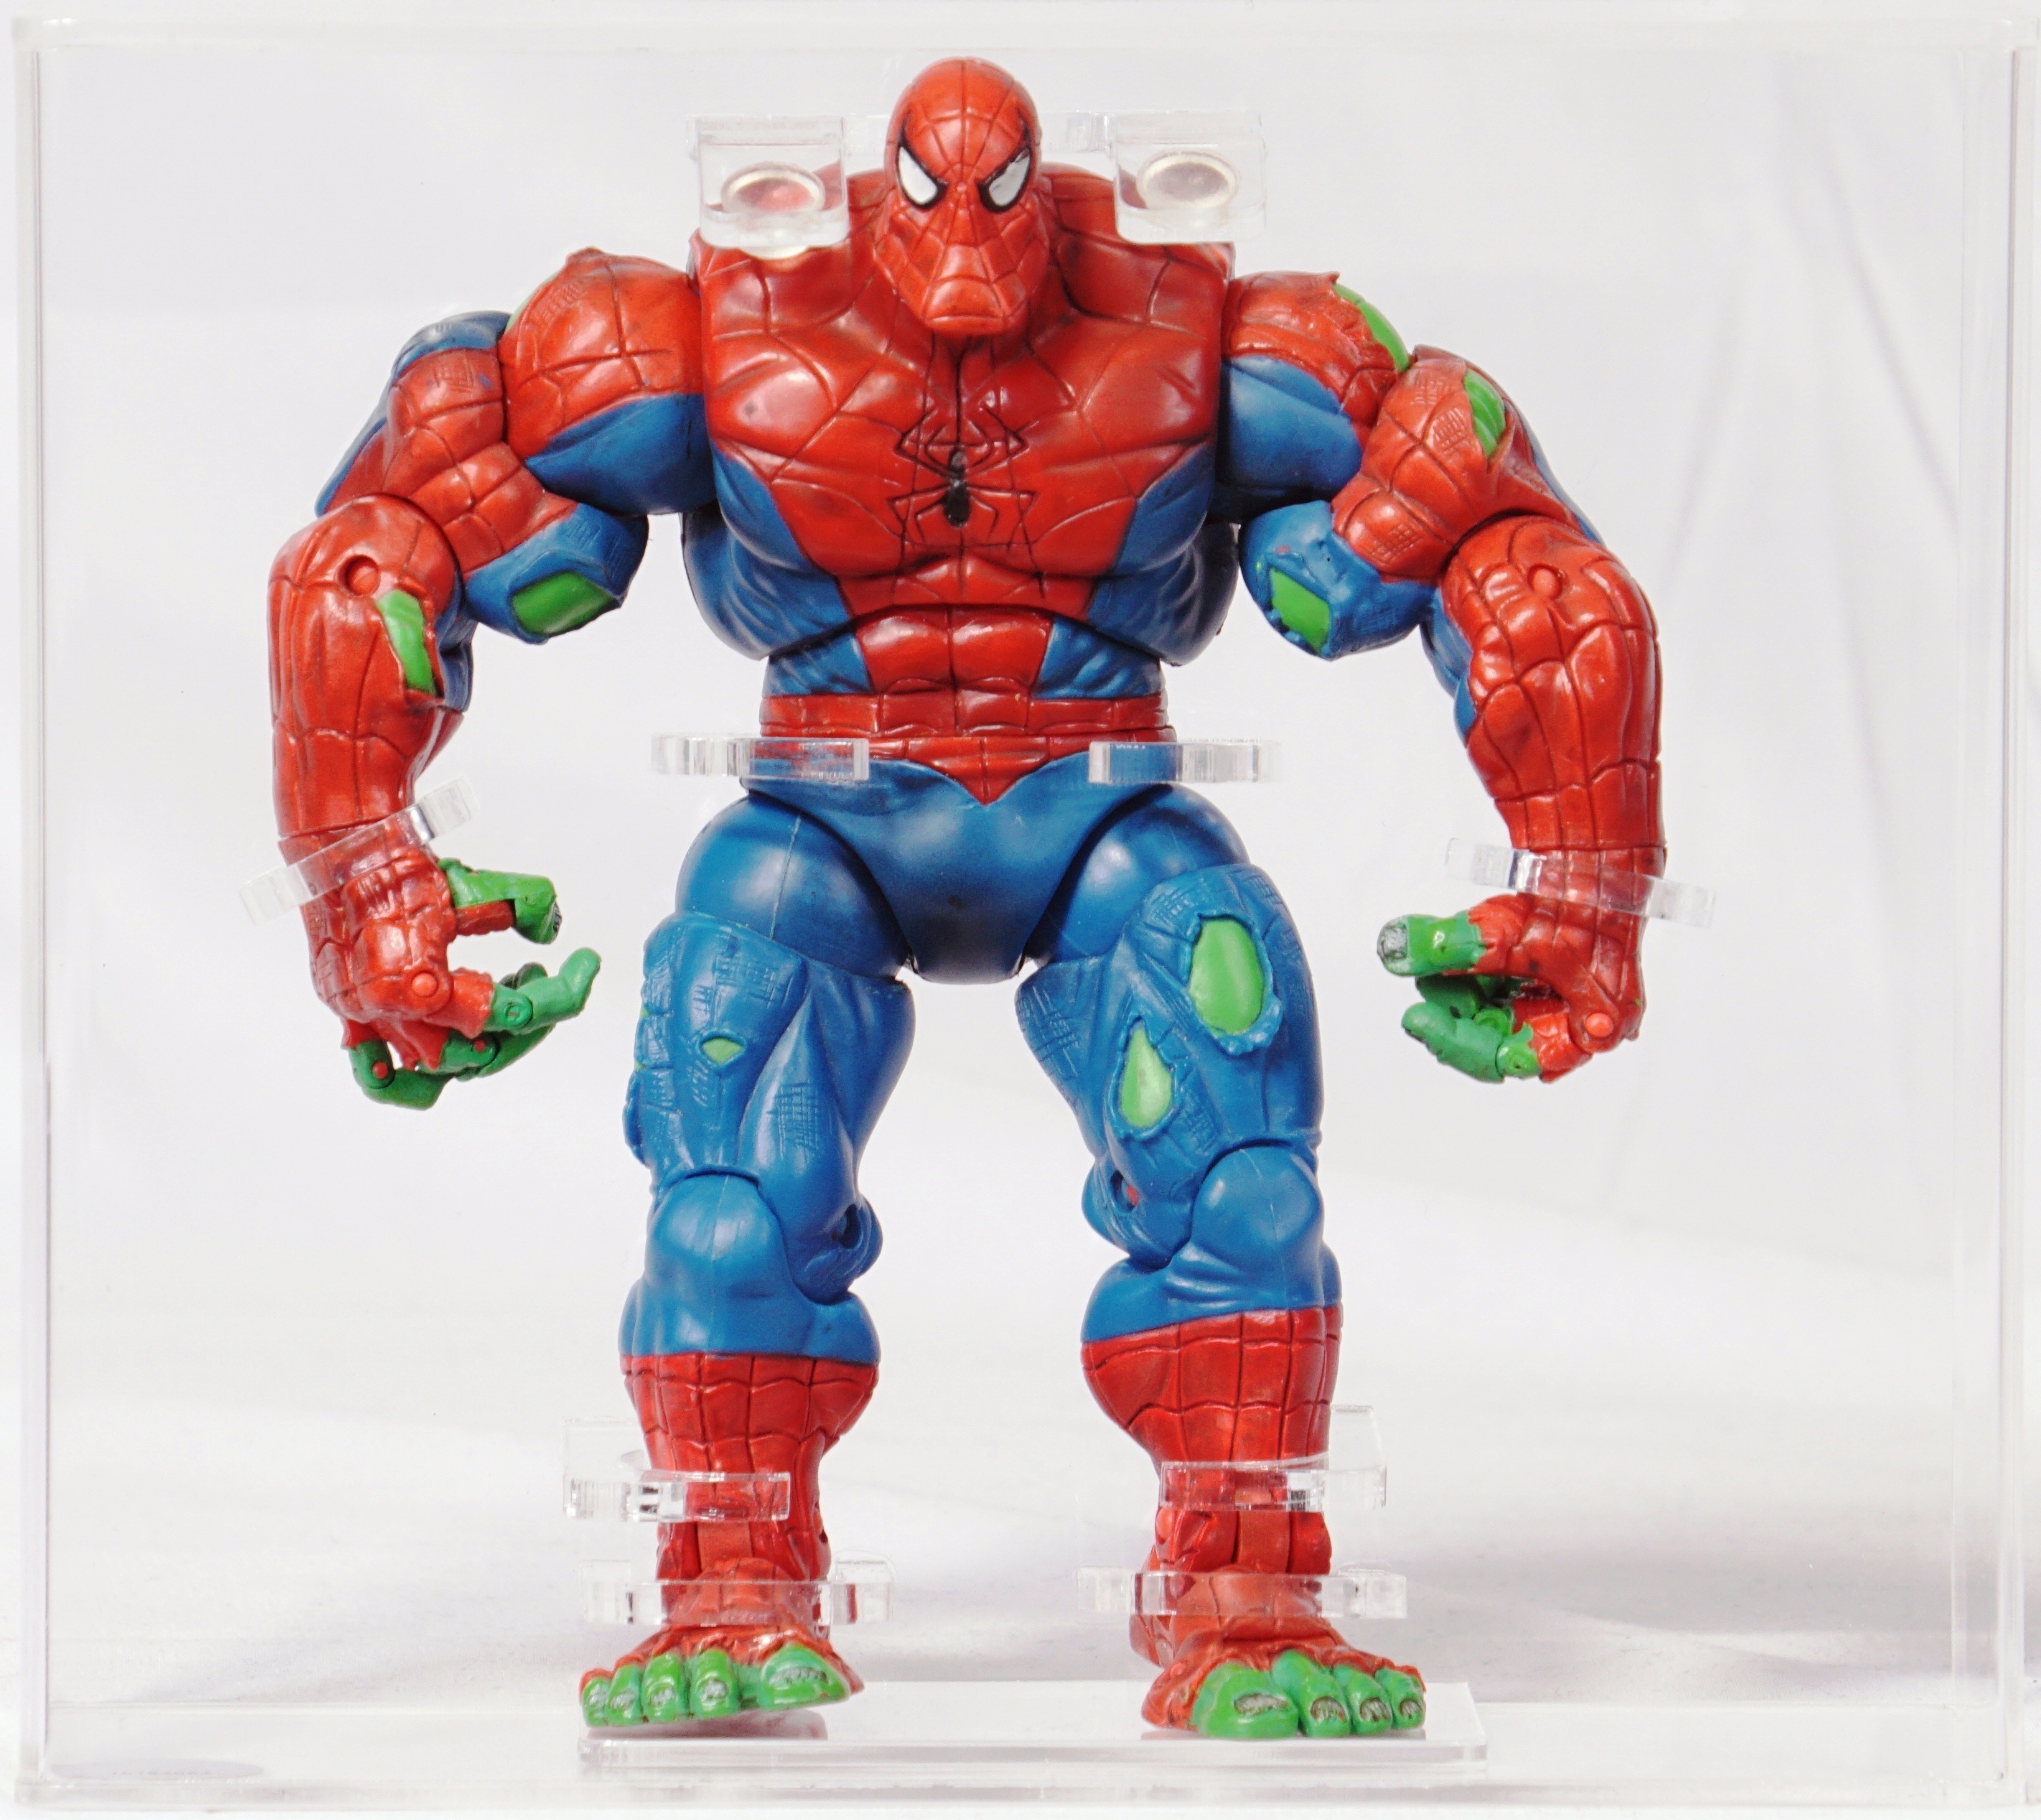 2006 Toy Biz Marvel Amazing Spider-Man Loose Action Figure - Spider Hulk  Spider-Man